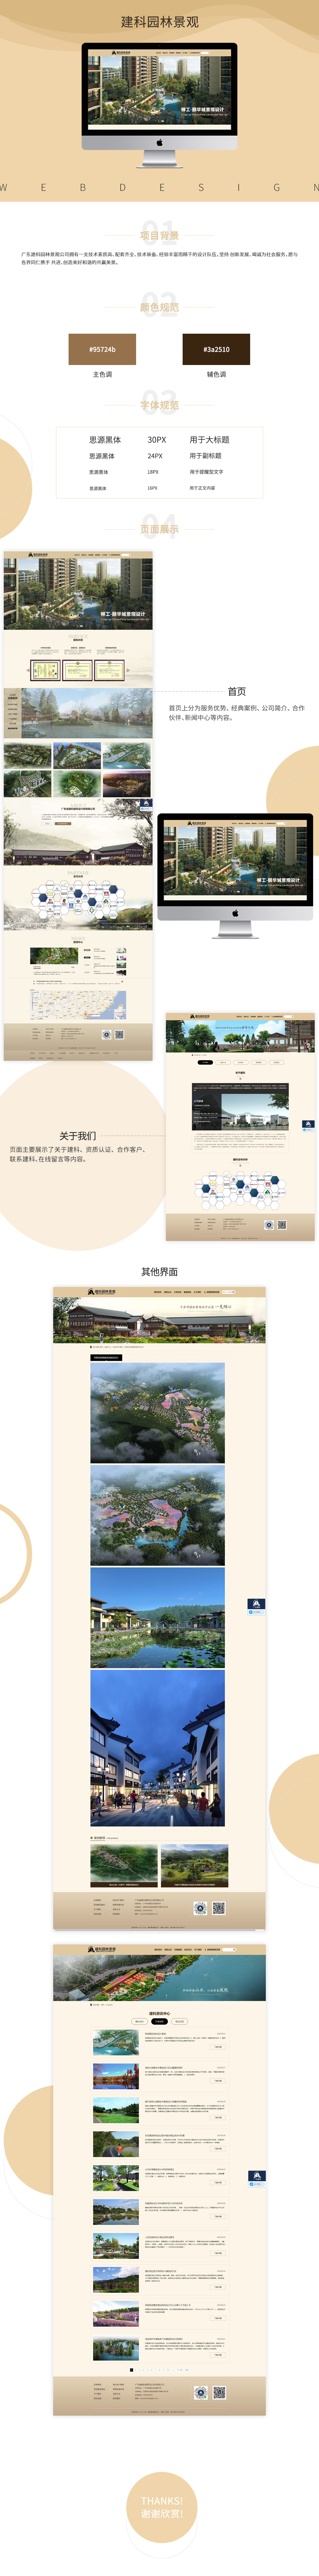 广东省建科建筑设计院有限公司品牌网站案例